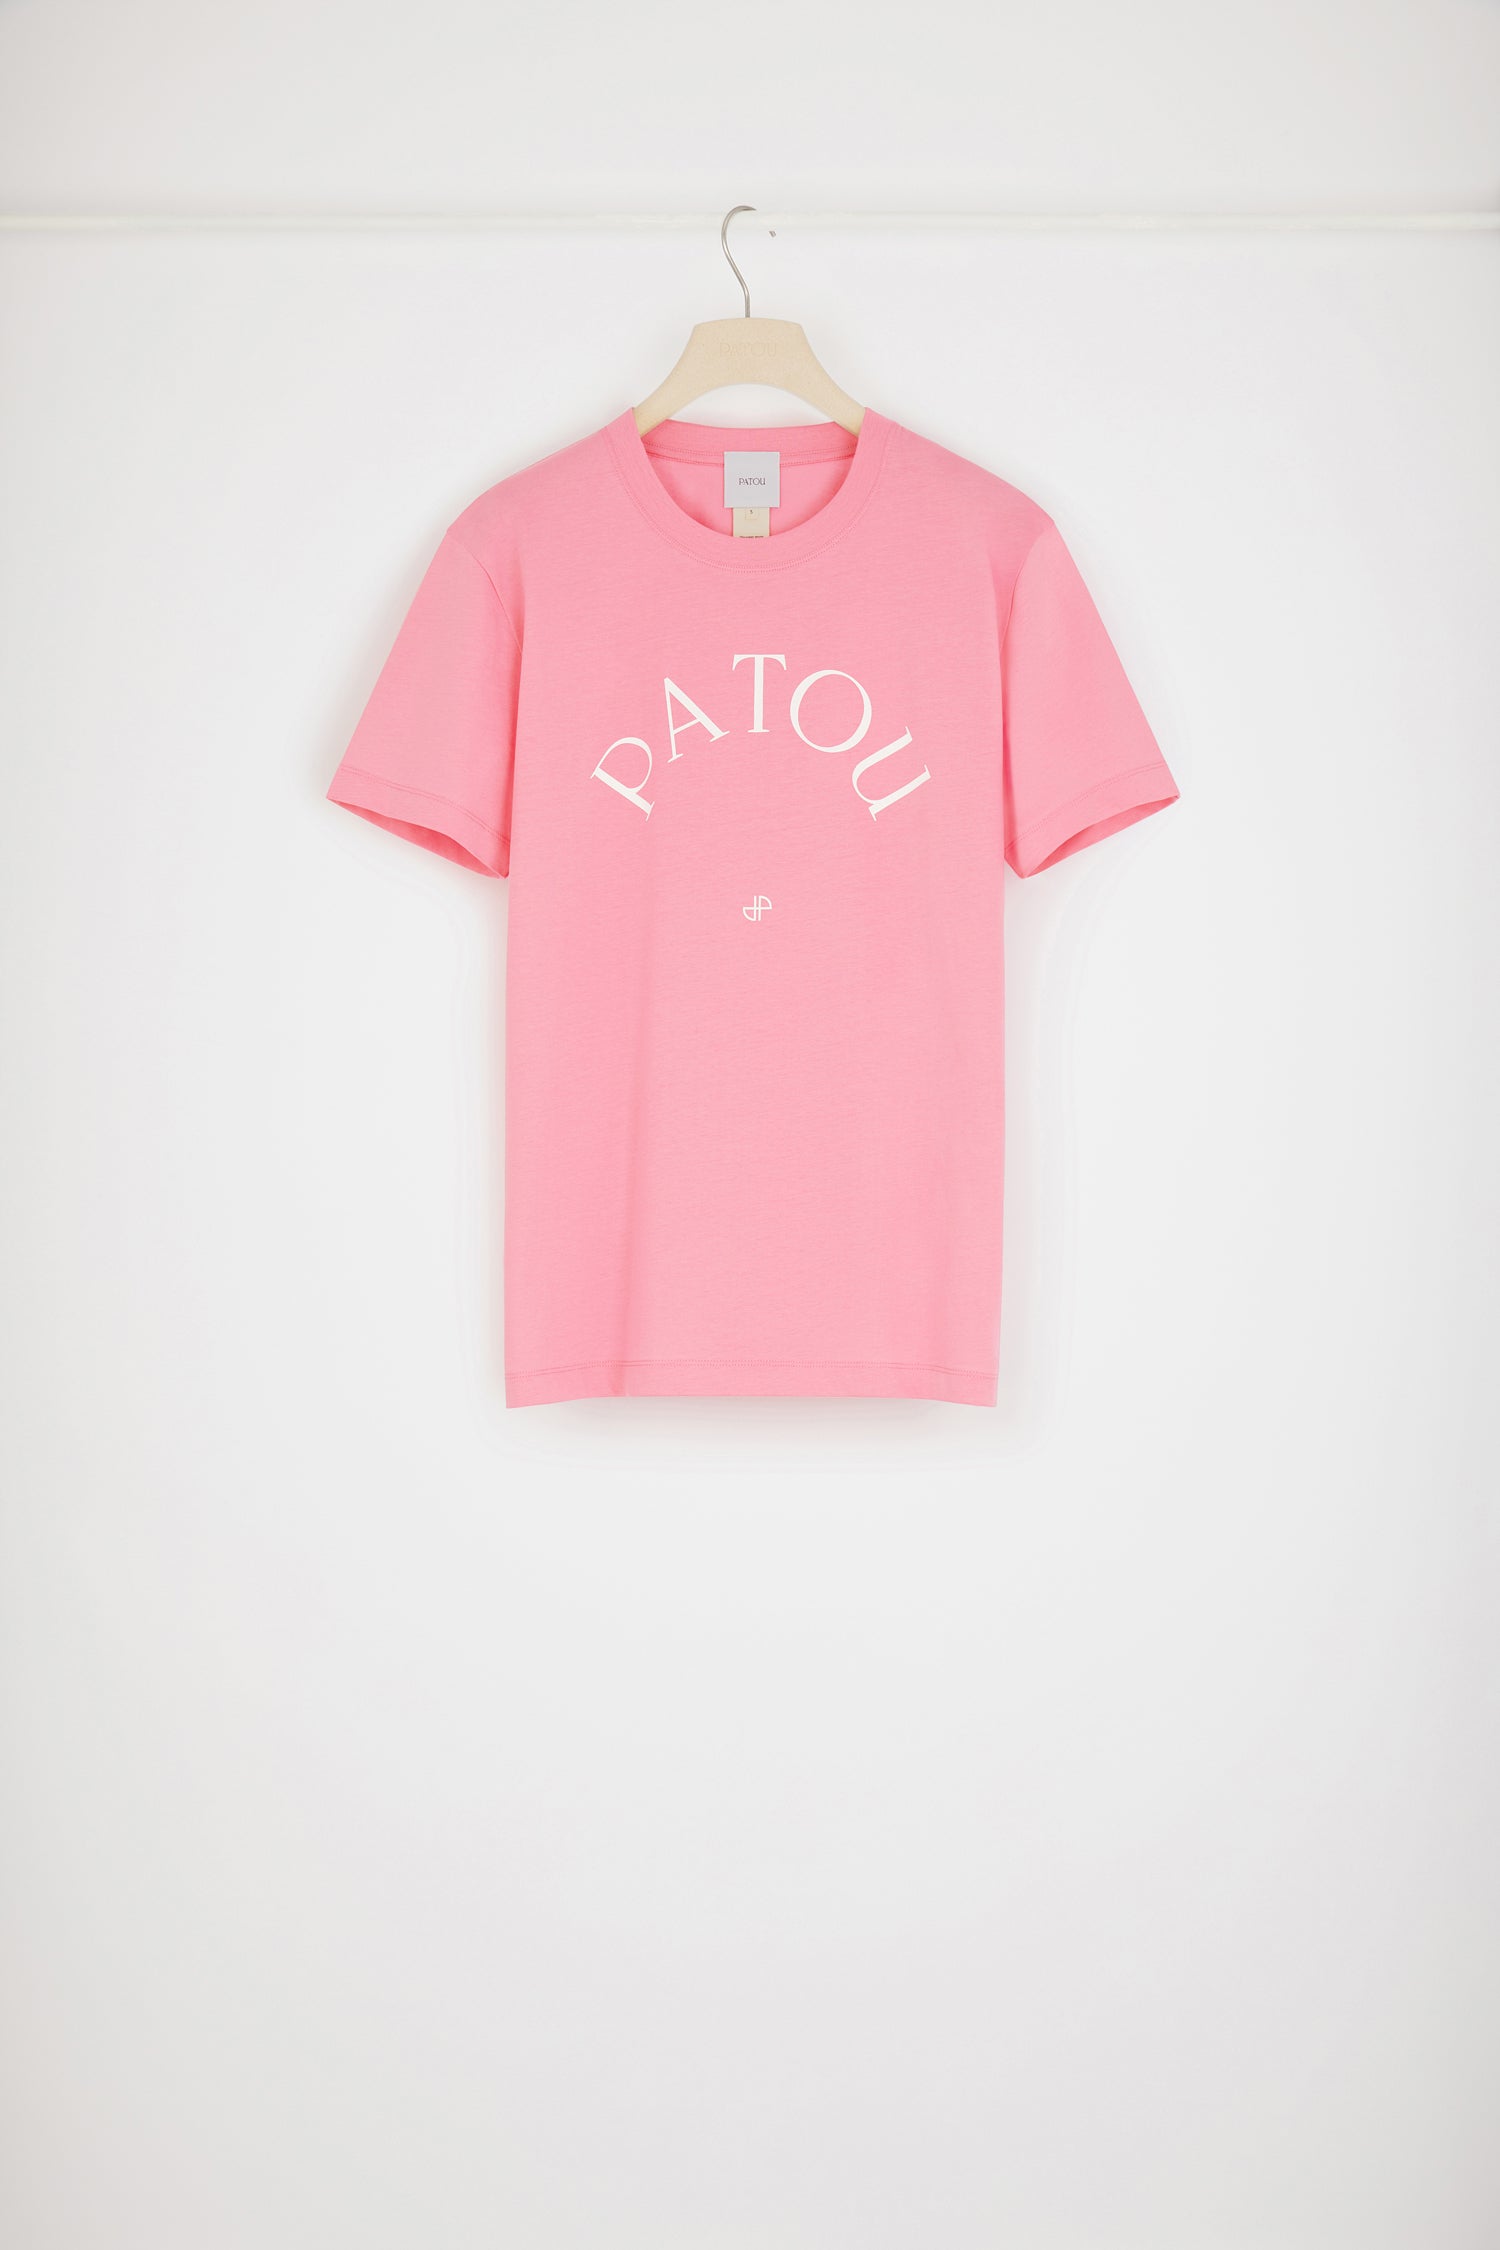 オーガニックコットン パトゥ Tシャツ - Darling Pink - XS